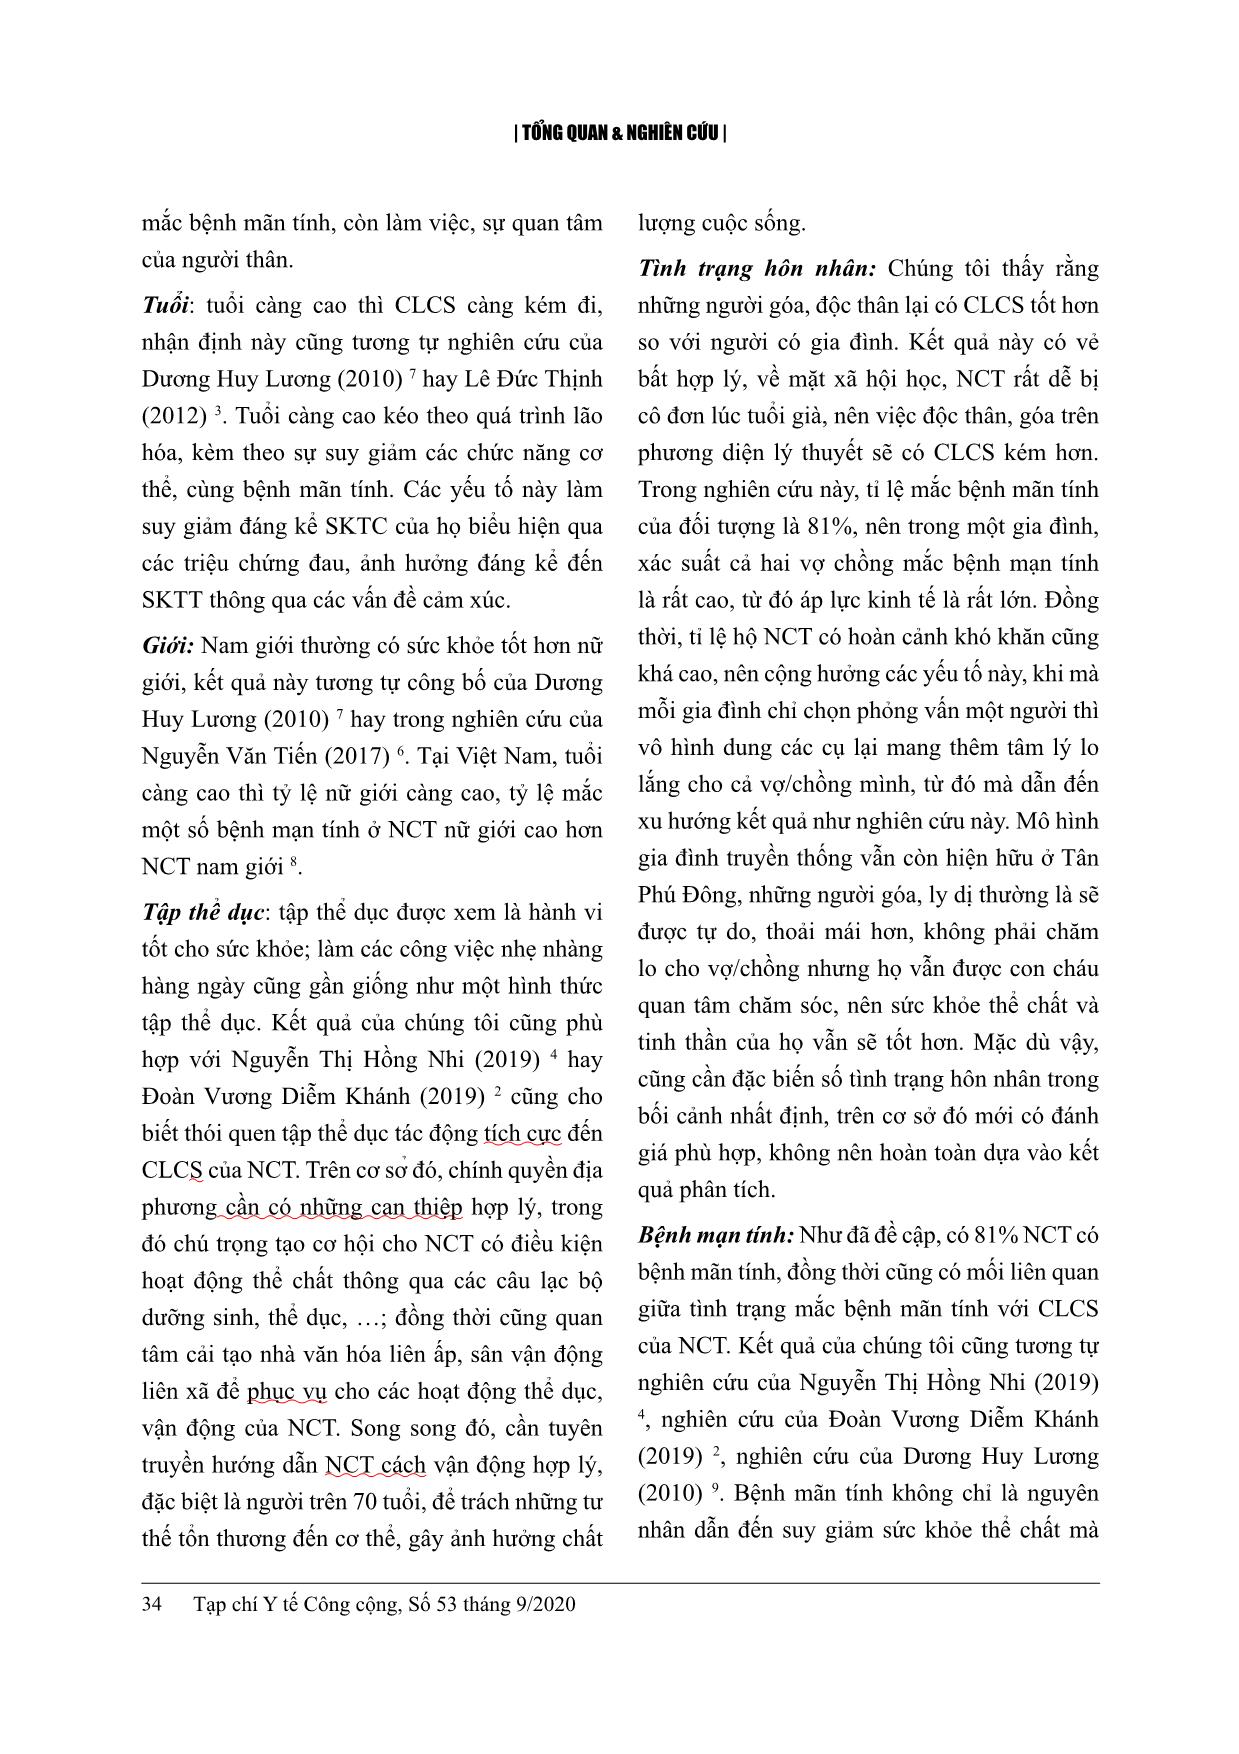 Chất lượng cuộc sống và một số yếu tố liên quan ở người cao tuổi tại huyện Tân Phú Đông, tỉnh Tiền Giang năm 2020 trang 9